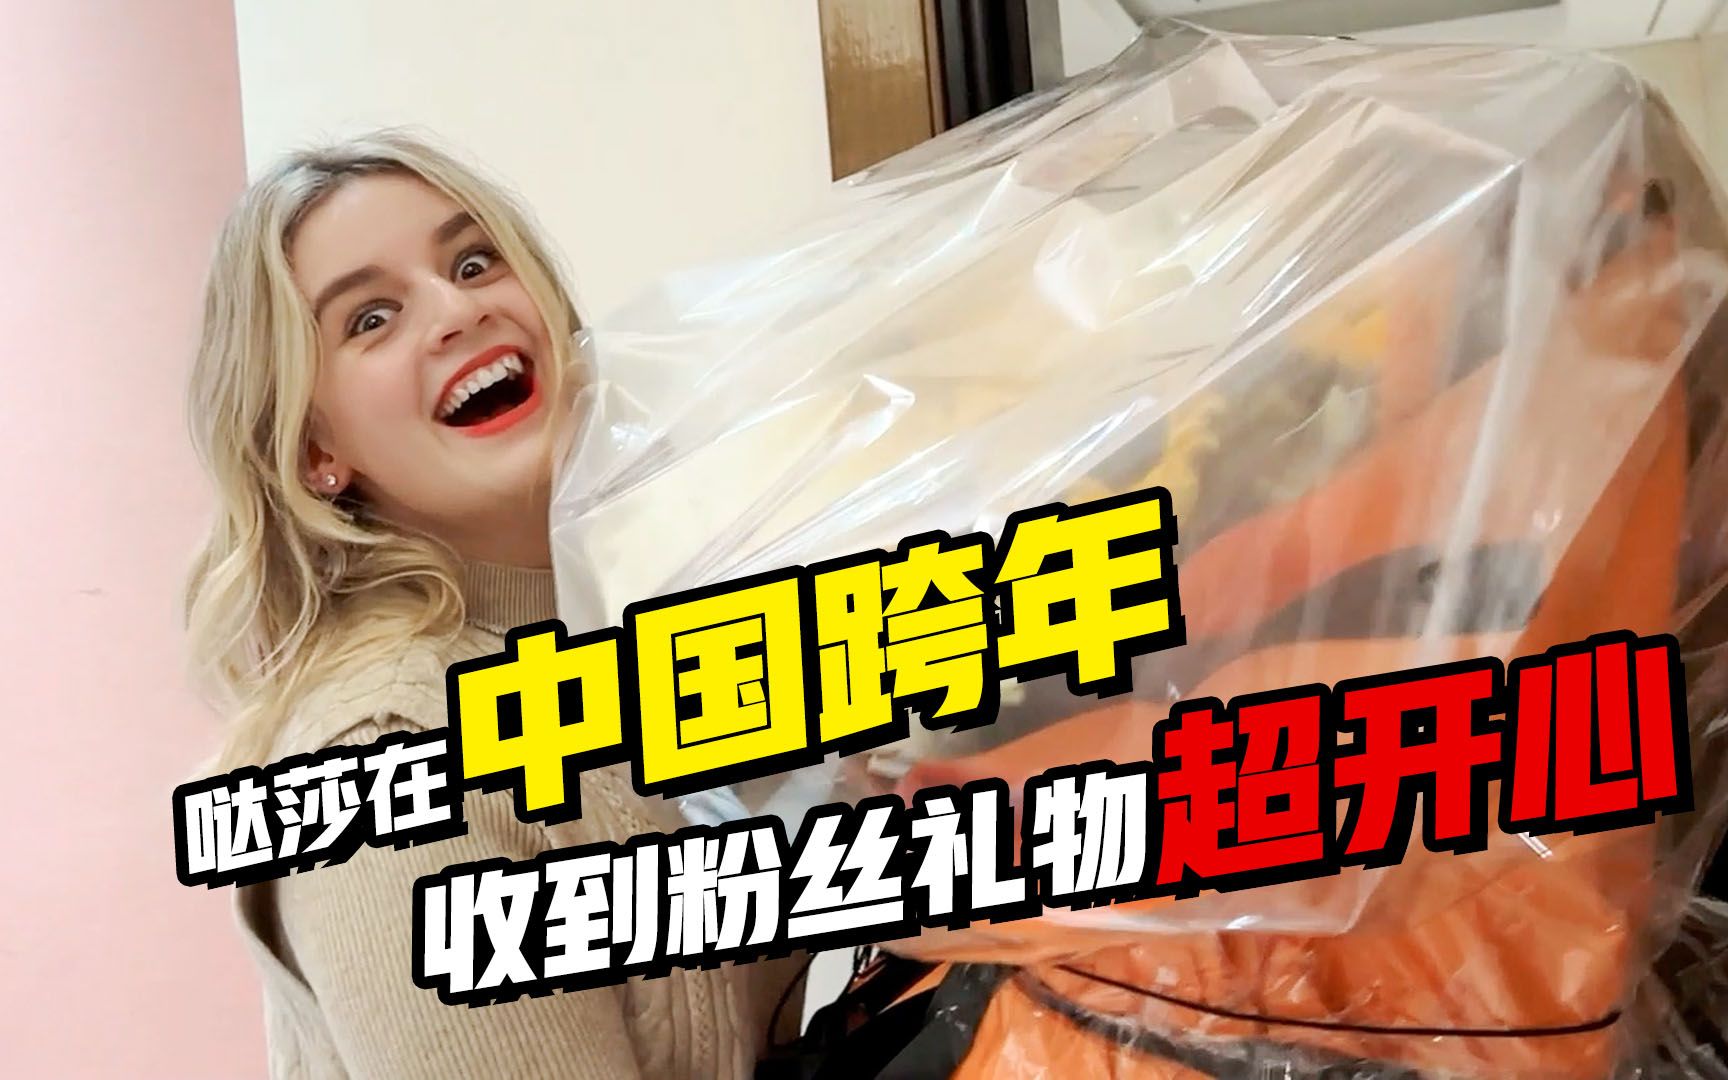 俄罗斯媳妇第一次在中国跨年 粉丝送来超大惊喜 小哒莎感动落泪